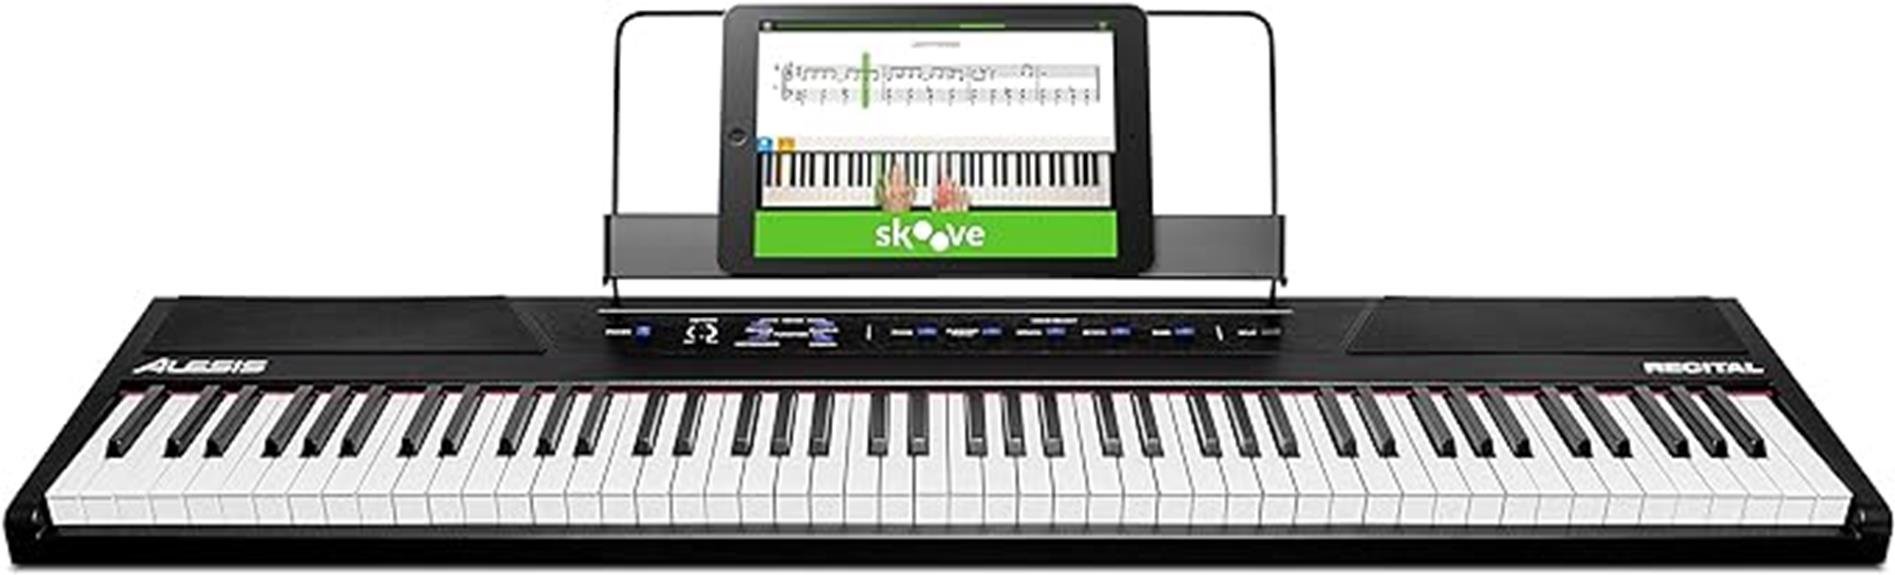 digital piano by alesis